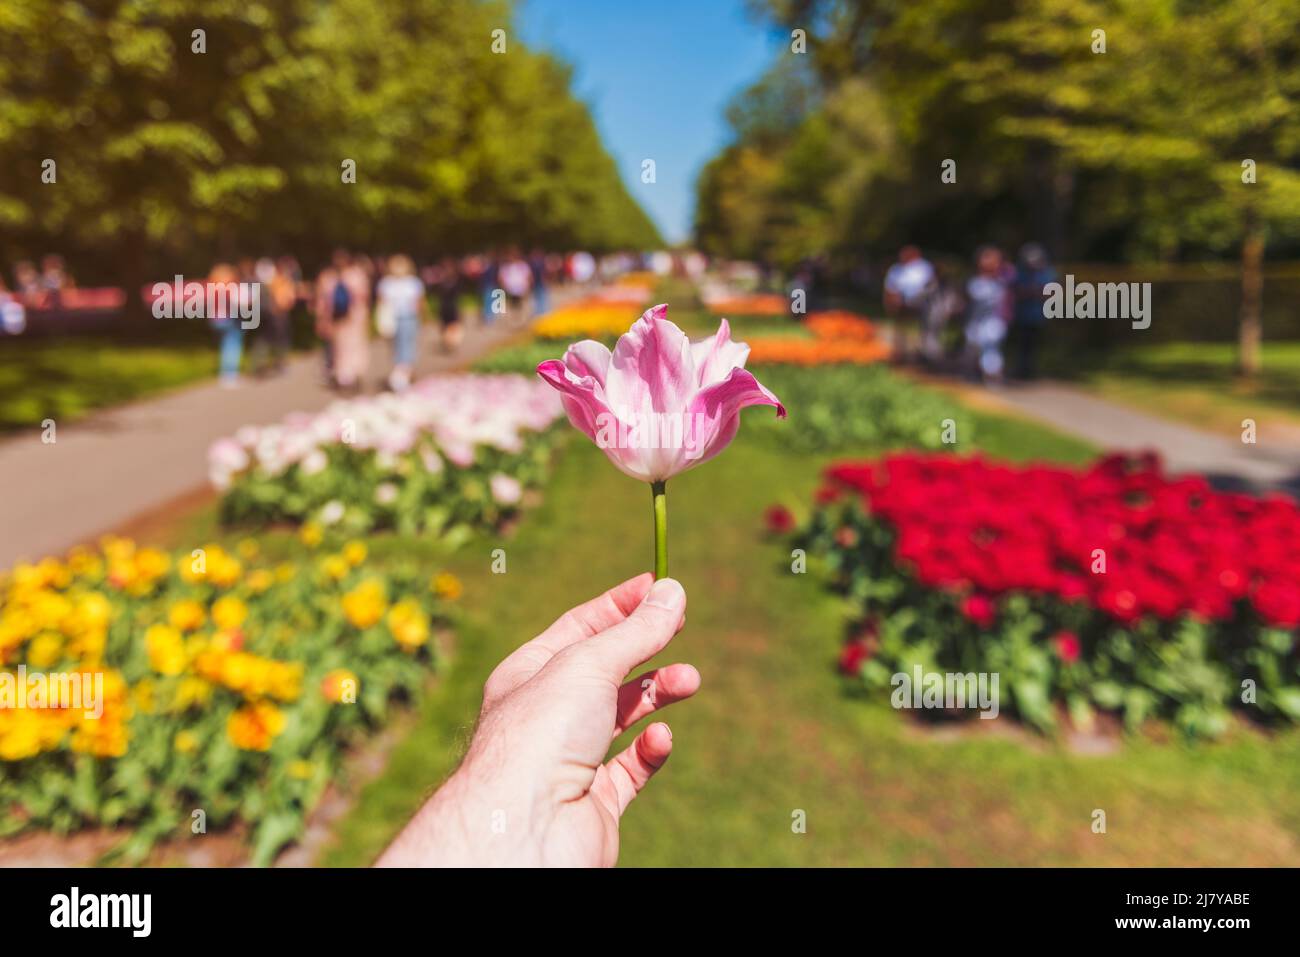 First Person Perspective on Male Hand mit einer Tulpe in den Keukenhof Gardens in Lisse, Niederlande, stand der Fokus im Vordergrund. Stockfoto